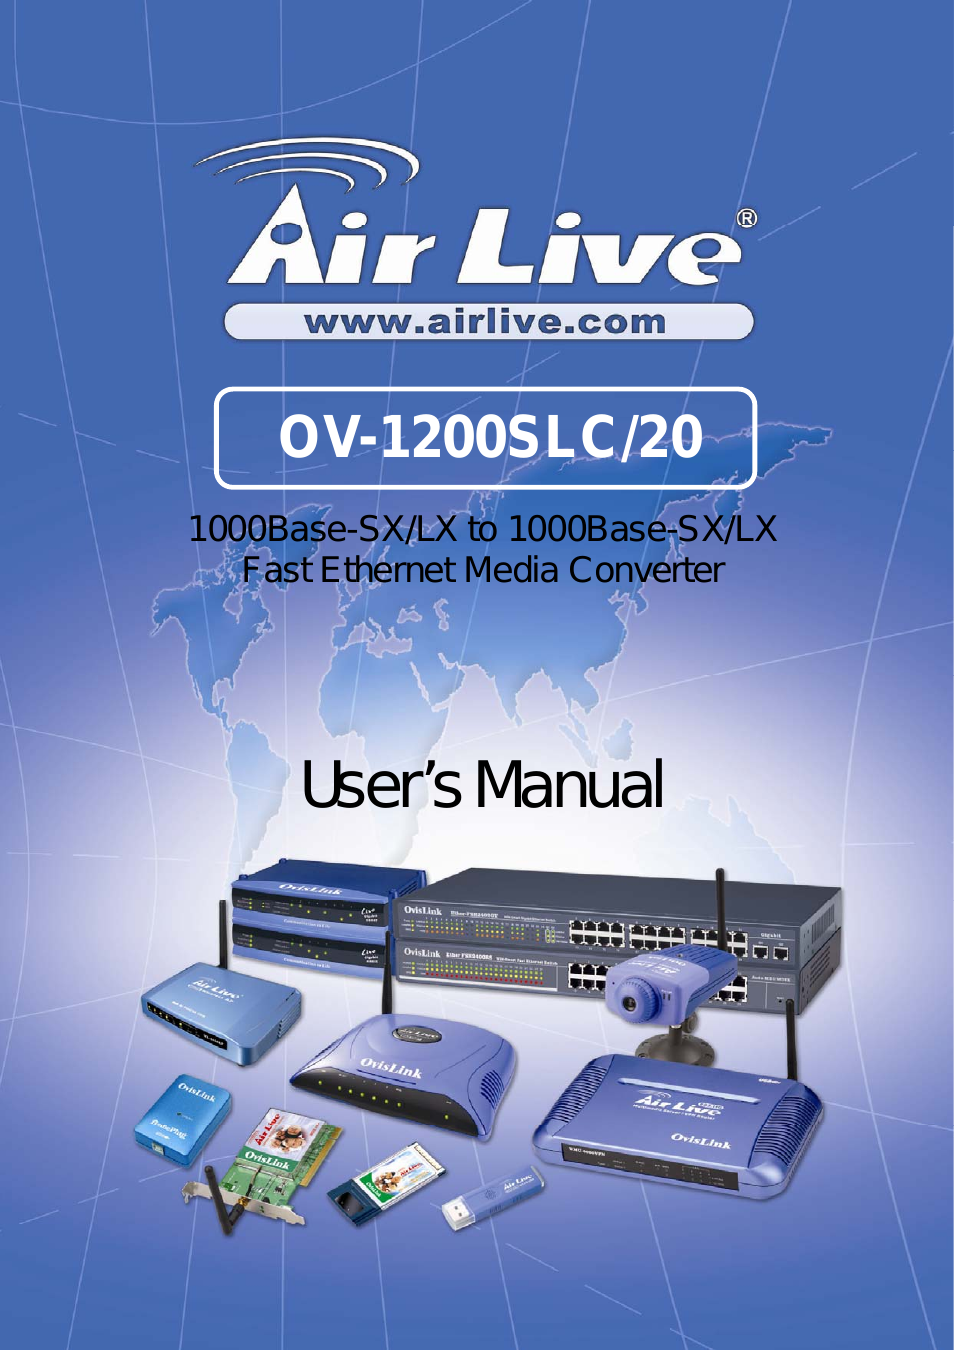 OV-1200 series